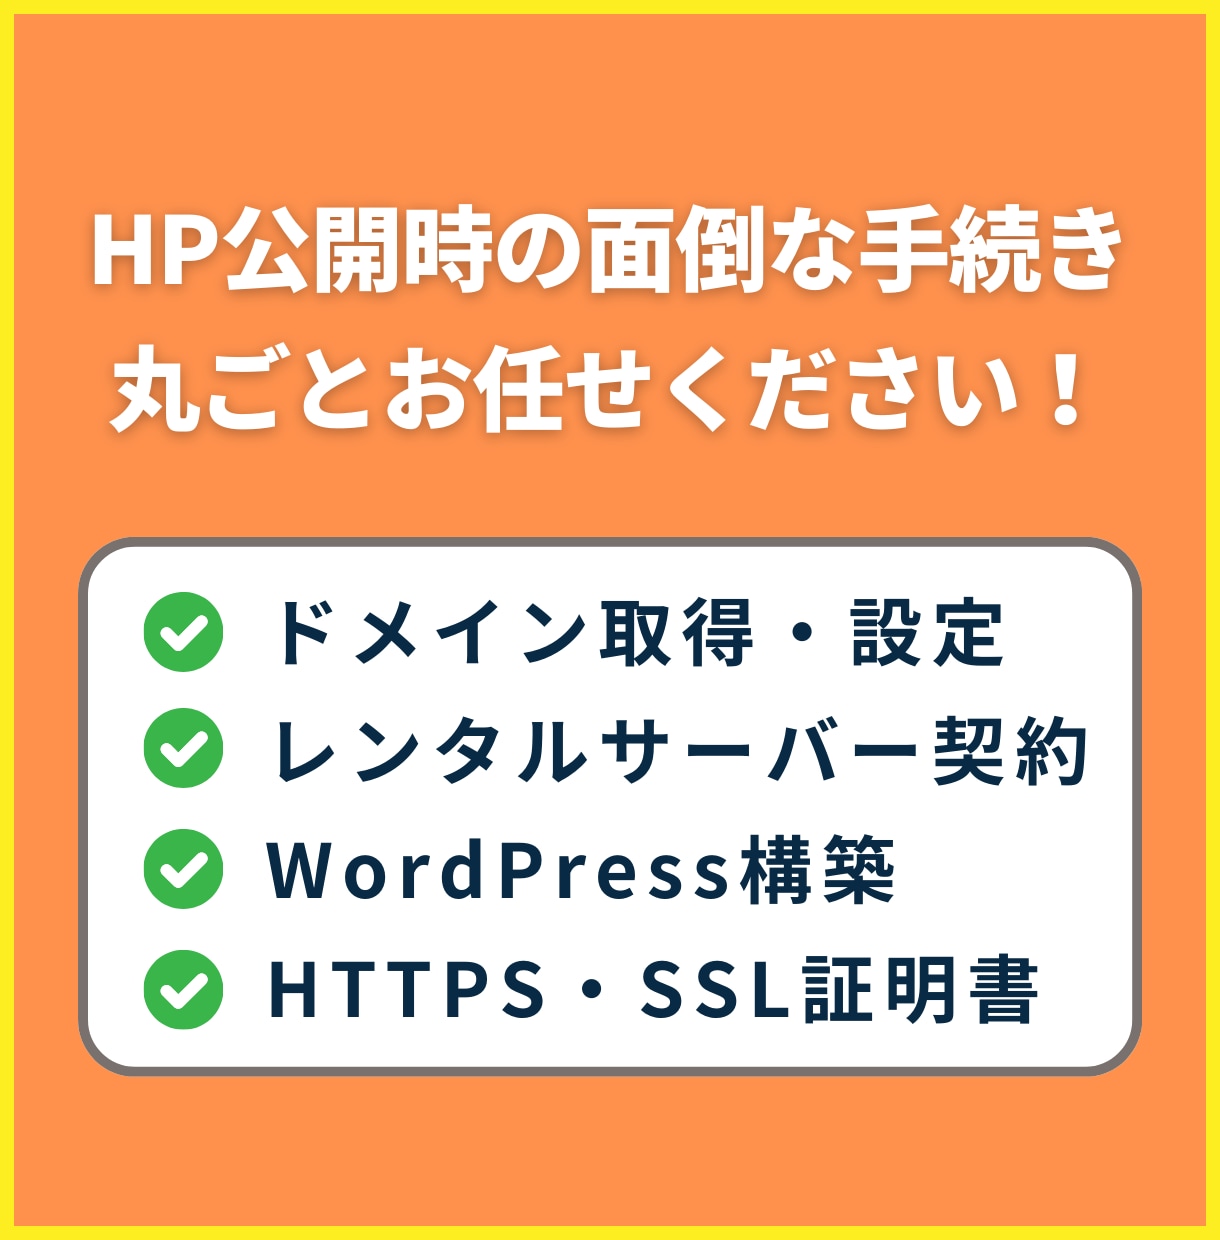 ドメイン取得・サーバー構築〜HP公開まで代行します サーバーの引越し、HTTPS対応、WordPress構築も イメージ1